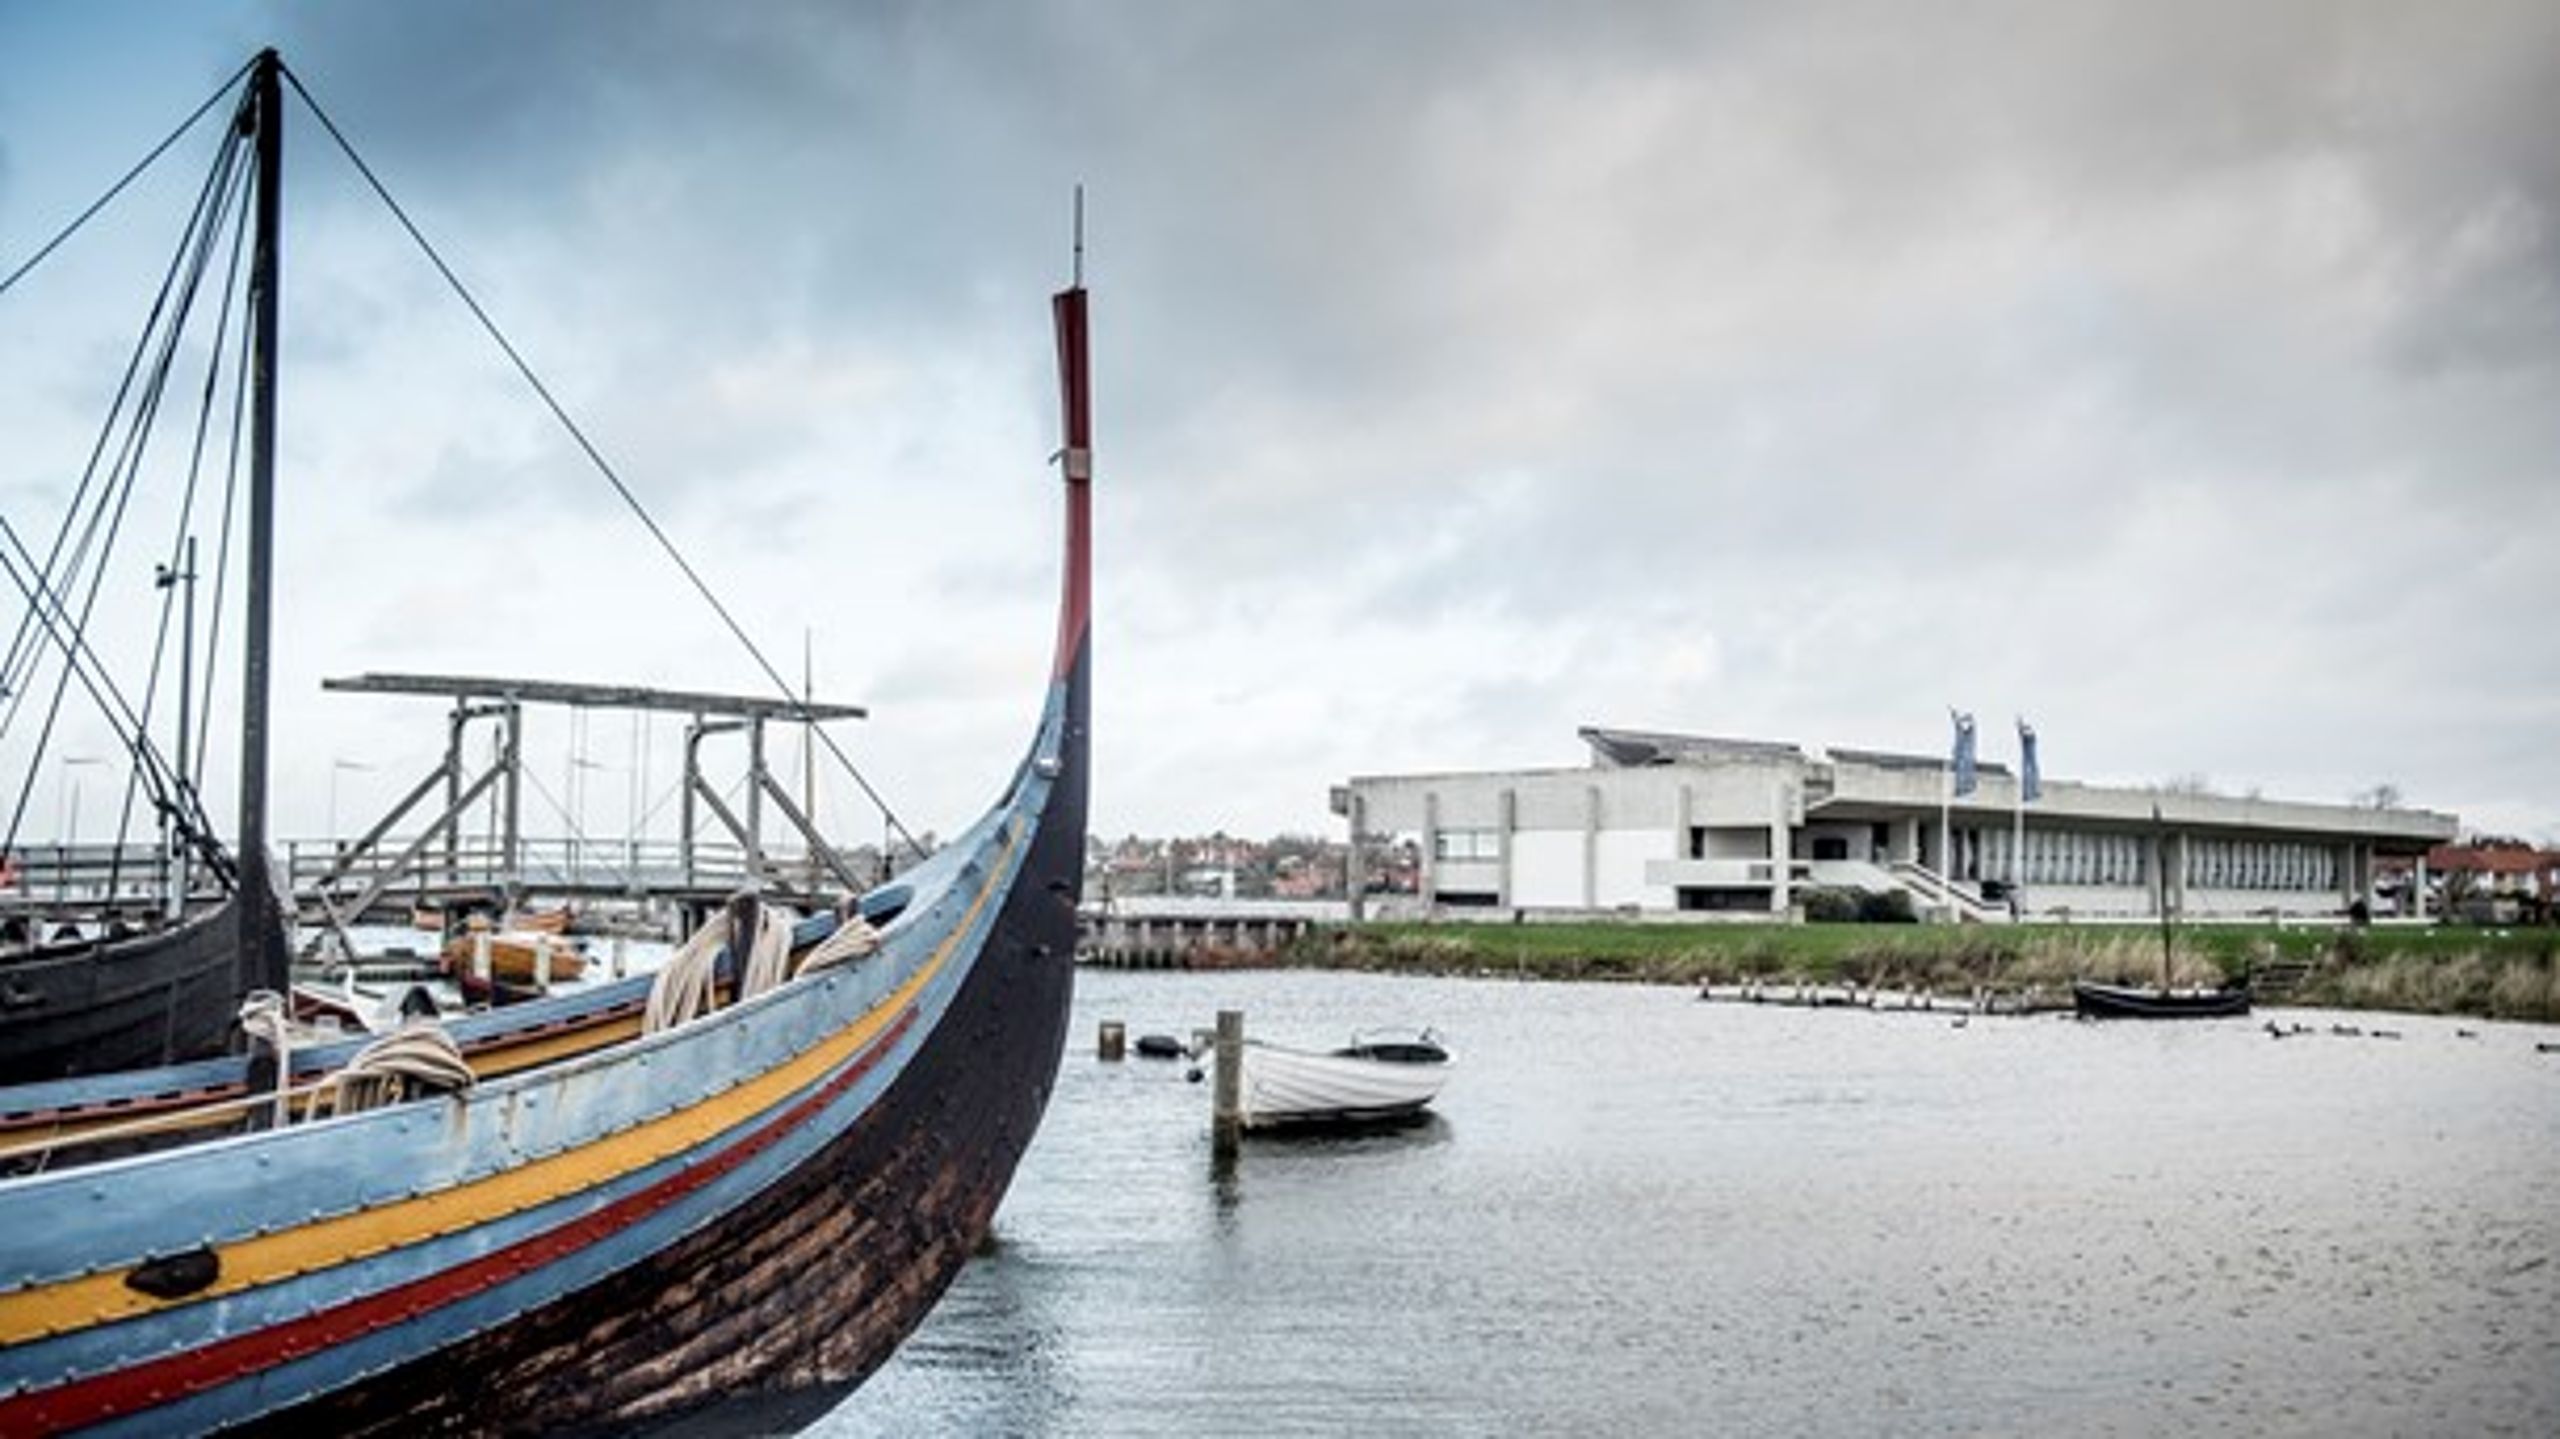 Selv om Vikingeskibshallen mistede sin fredning, kan den affødte interesse forhåbentlig komme området til gode, skriver Johan Westh Hage.